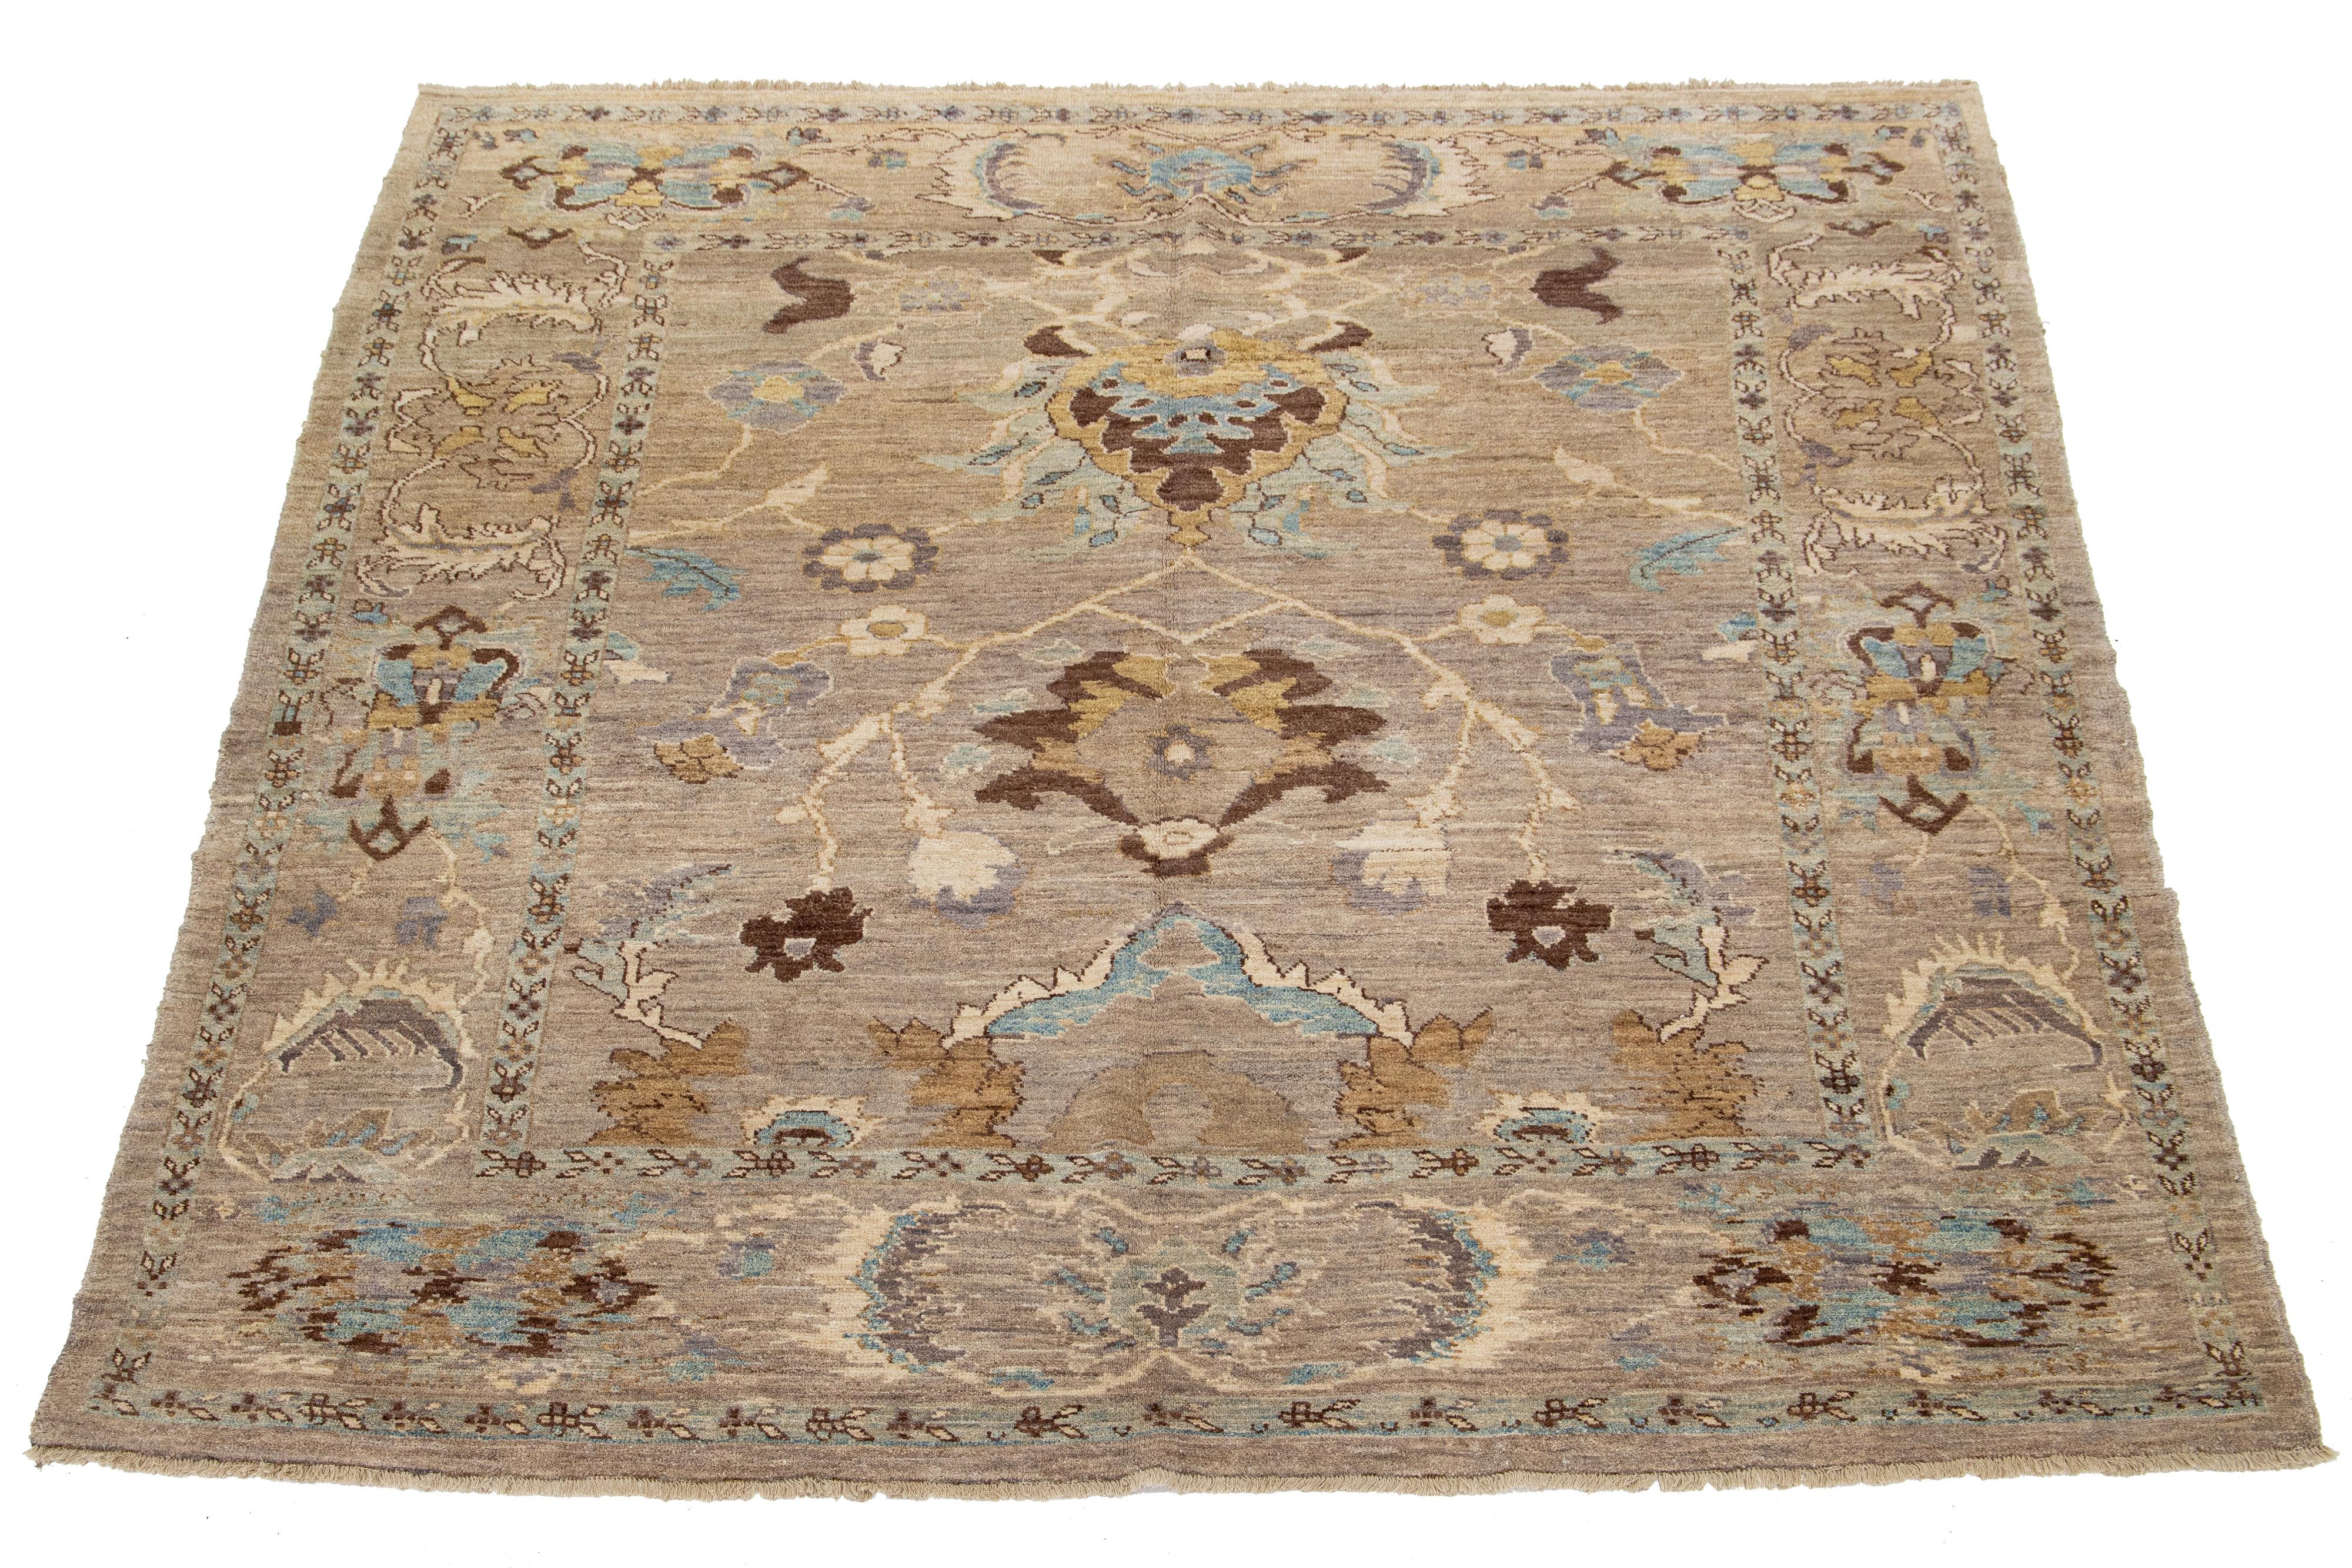 Il s'agit d'un tapis persan en laine, noué à la main et présentant un ravissant design en bleu, beige et marron sur un fond marron clair.

Ce tapis mesure 8'1